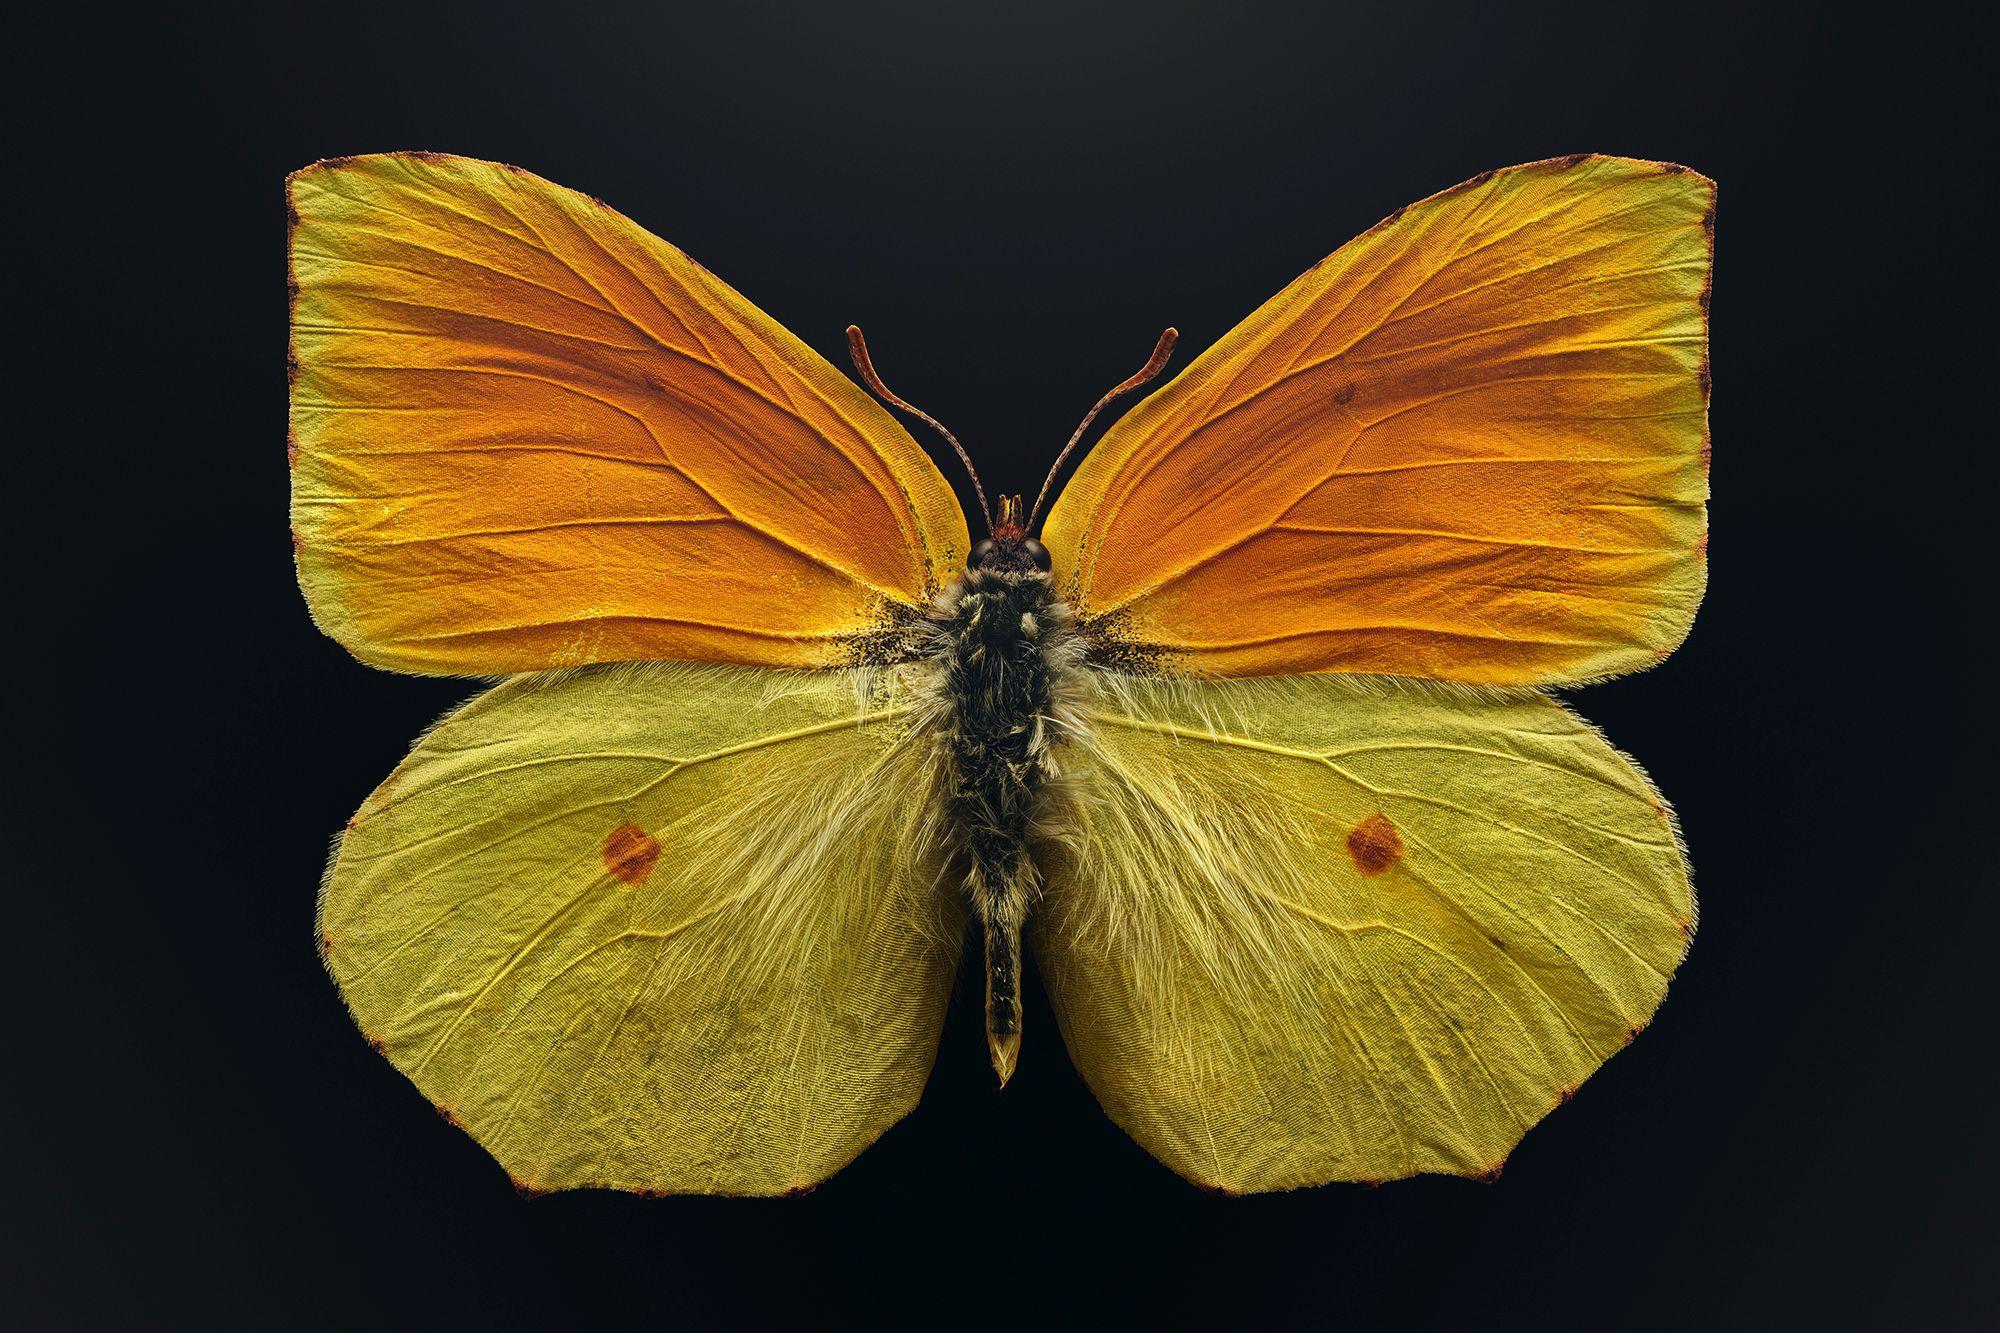 Der vom Aussterben bedrohte Schmetterling (Gonepteryx maderensis), gemeinhin als Madeira-Zitronenfalter bezeichnet, lebt in den Bergen der Madeira-Inseln. Als Raupen ernähren sie sich von einer einzigen Baumart, die ihrerseits durch eine invasive Pflanzenart bedroht ist. © Levon Biss